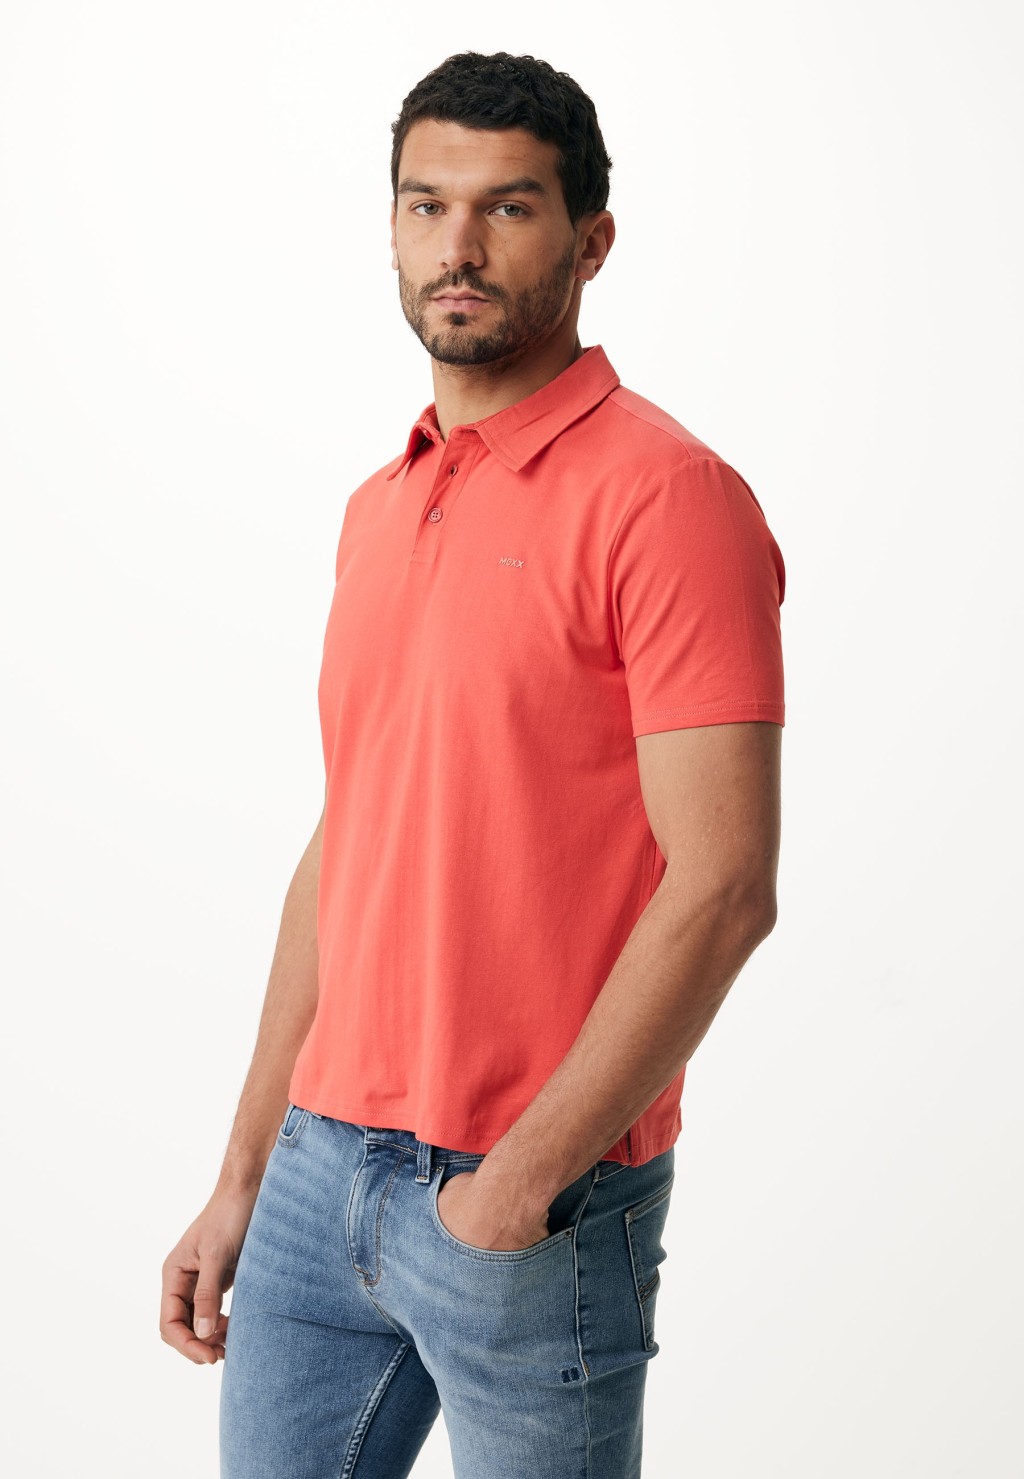 Сорочка Mexx для мужчин, с воротником поло, ZN1406033M, размер XXL, Bright Red